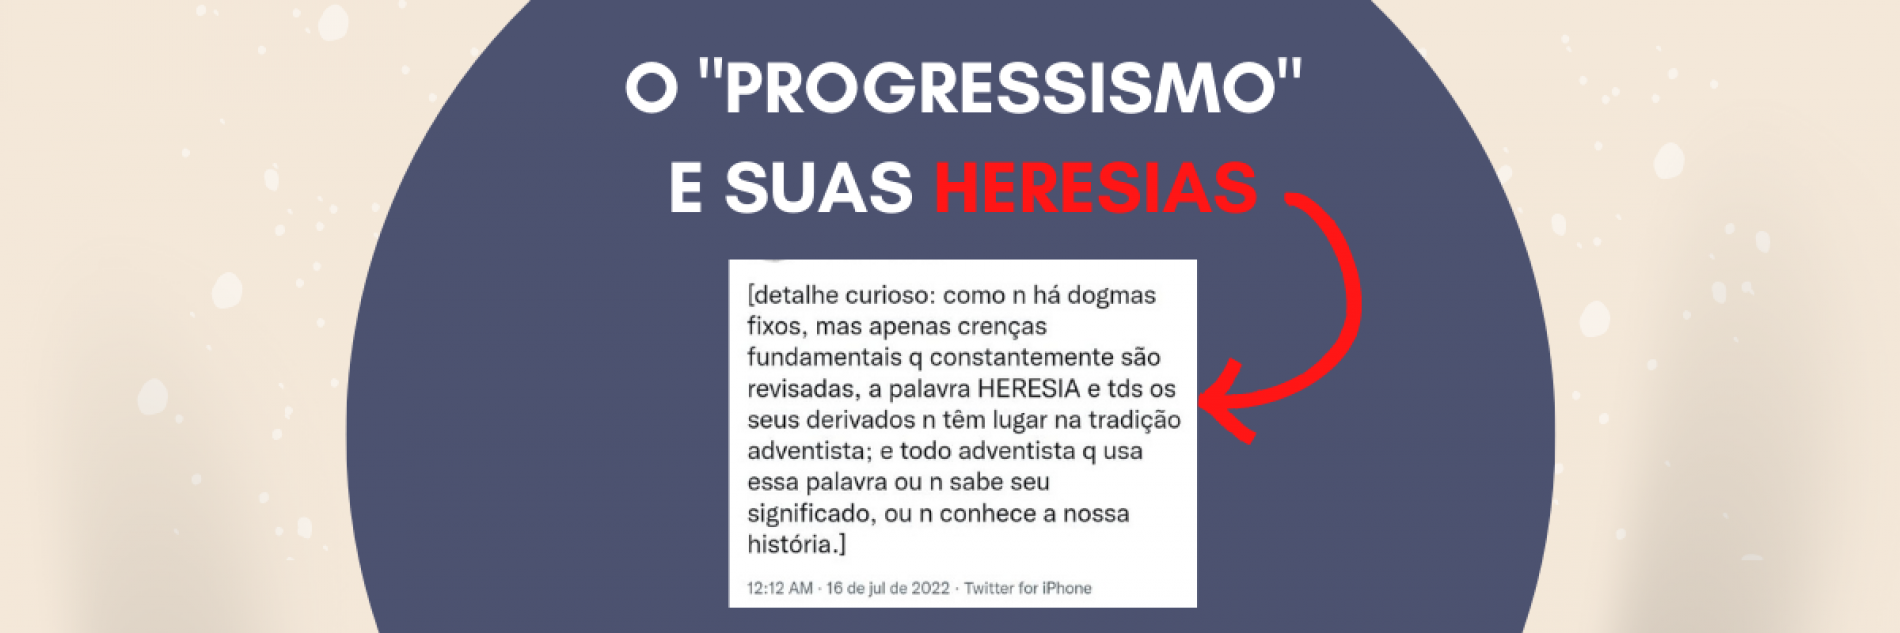 O “progressismo” e suas heresias